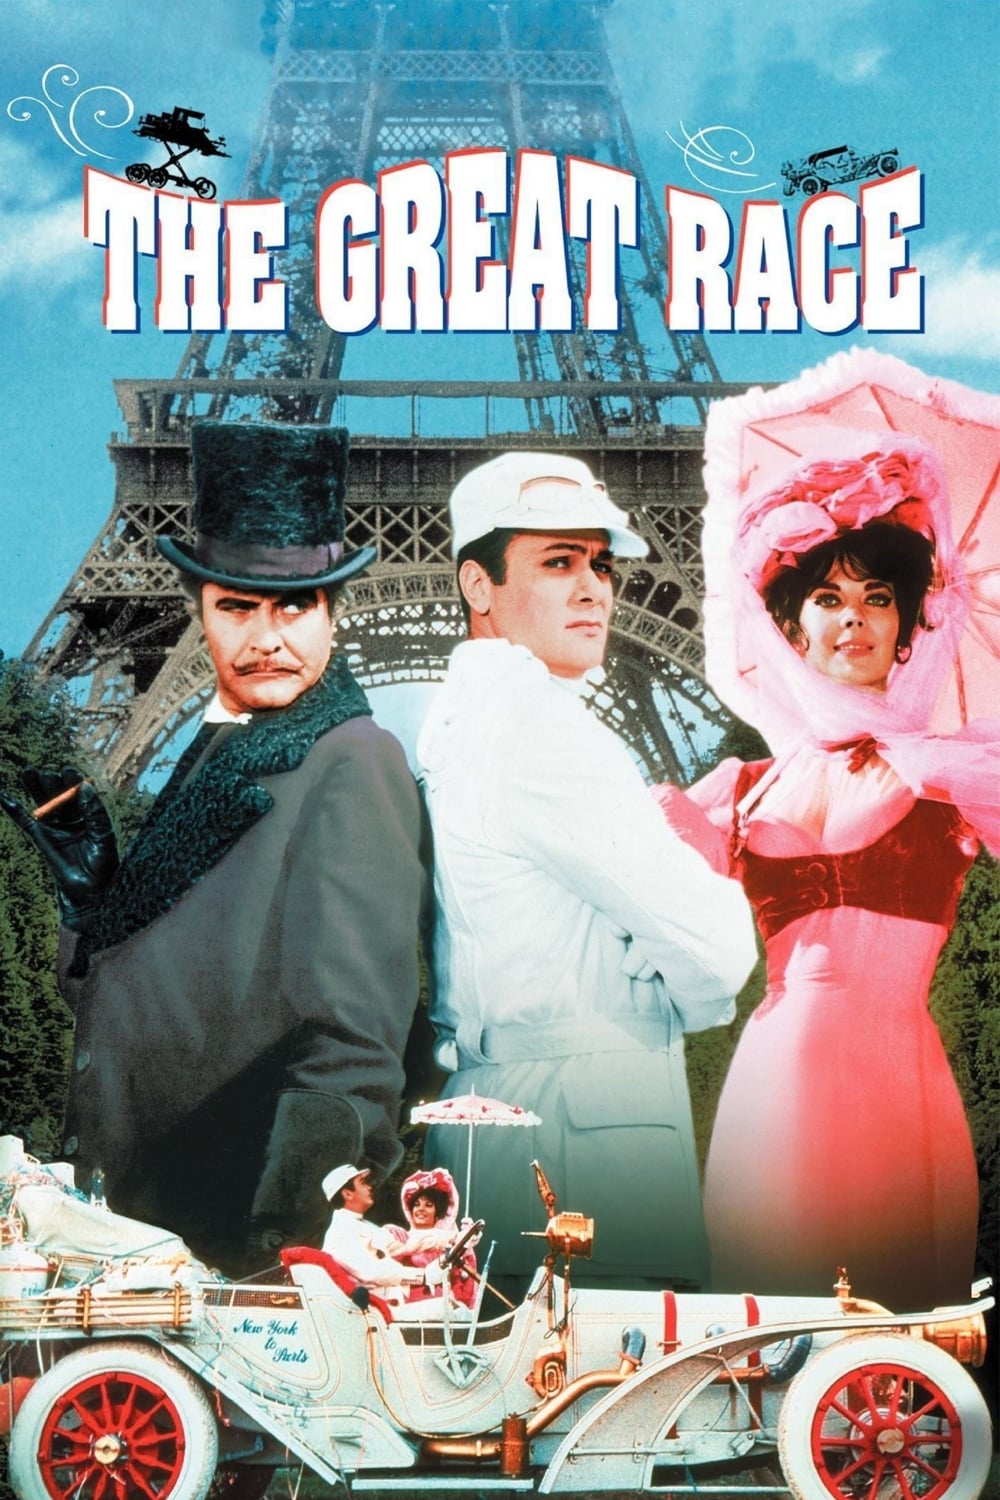 Das große Rennen rund um die Welt (1965)